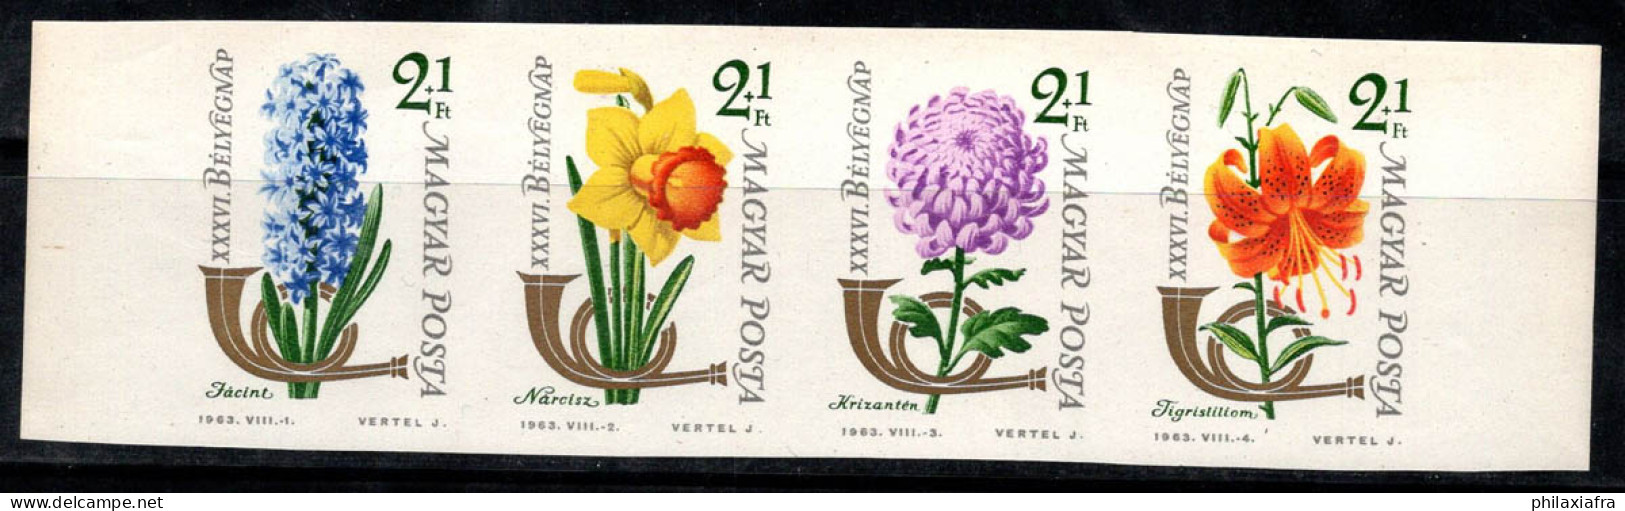 Hongrie 1963 Mi. 1967-70 B Neuf ** 80% Fleurs, Jacinthe, Narcisse, Lys - Unused Stamps